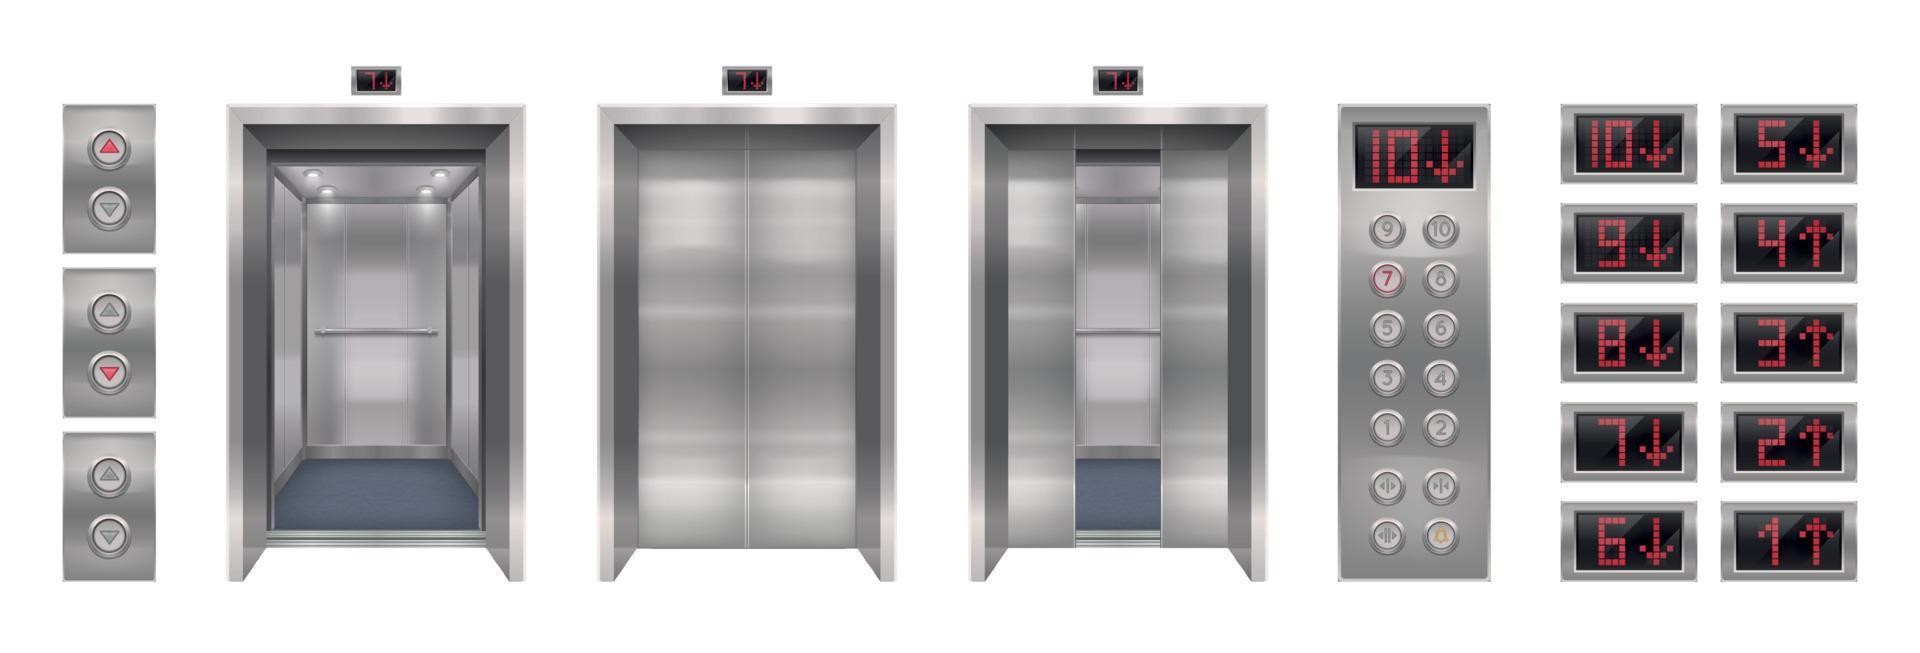 collection réaliste de portes d'ascenseur vecteur